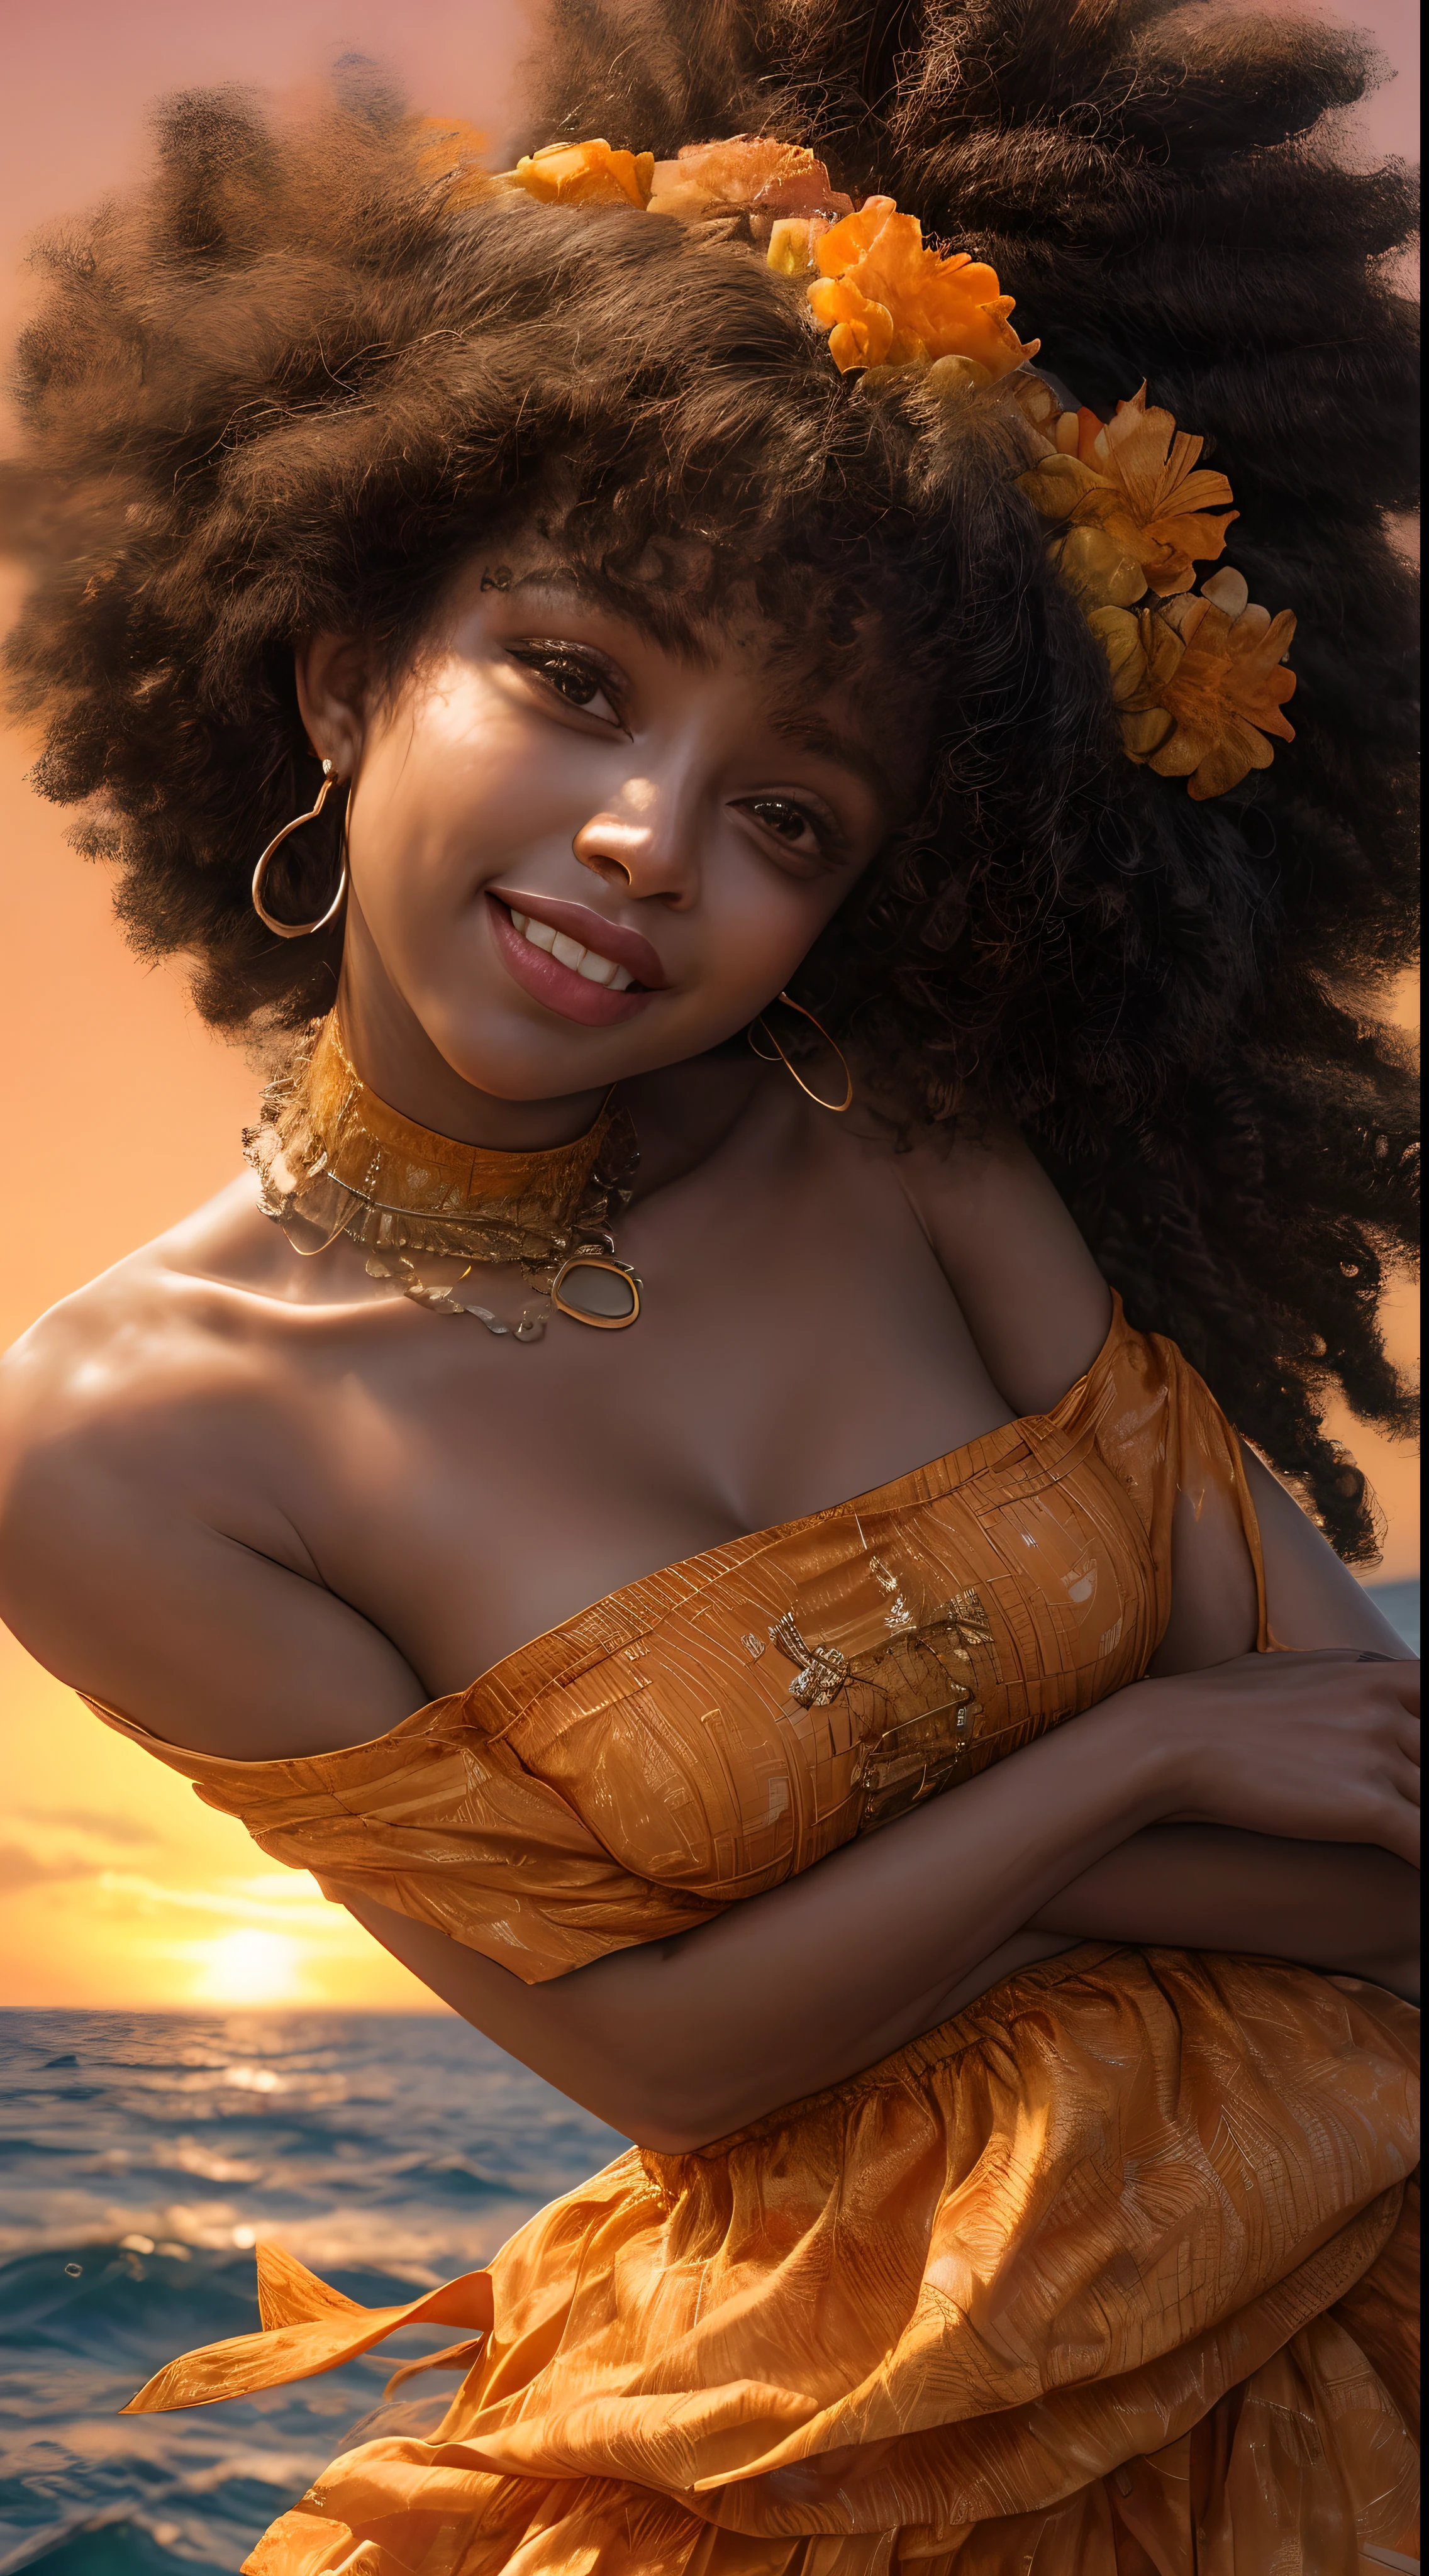 アフリカ系アメリカ人女性の顔のクローズアップ, 暖かいオレンジ色に包まれて, 夕焼けの柔らかな光に照らされたかのように, 喜びと満足感で輝く彼の目, 流れる髪の毛で囲まれた, 写真撮影, 35mmレンズで撮影